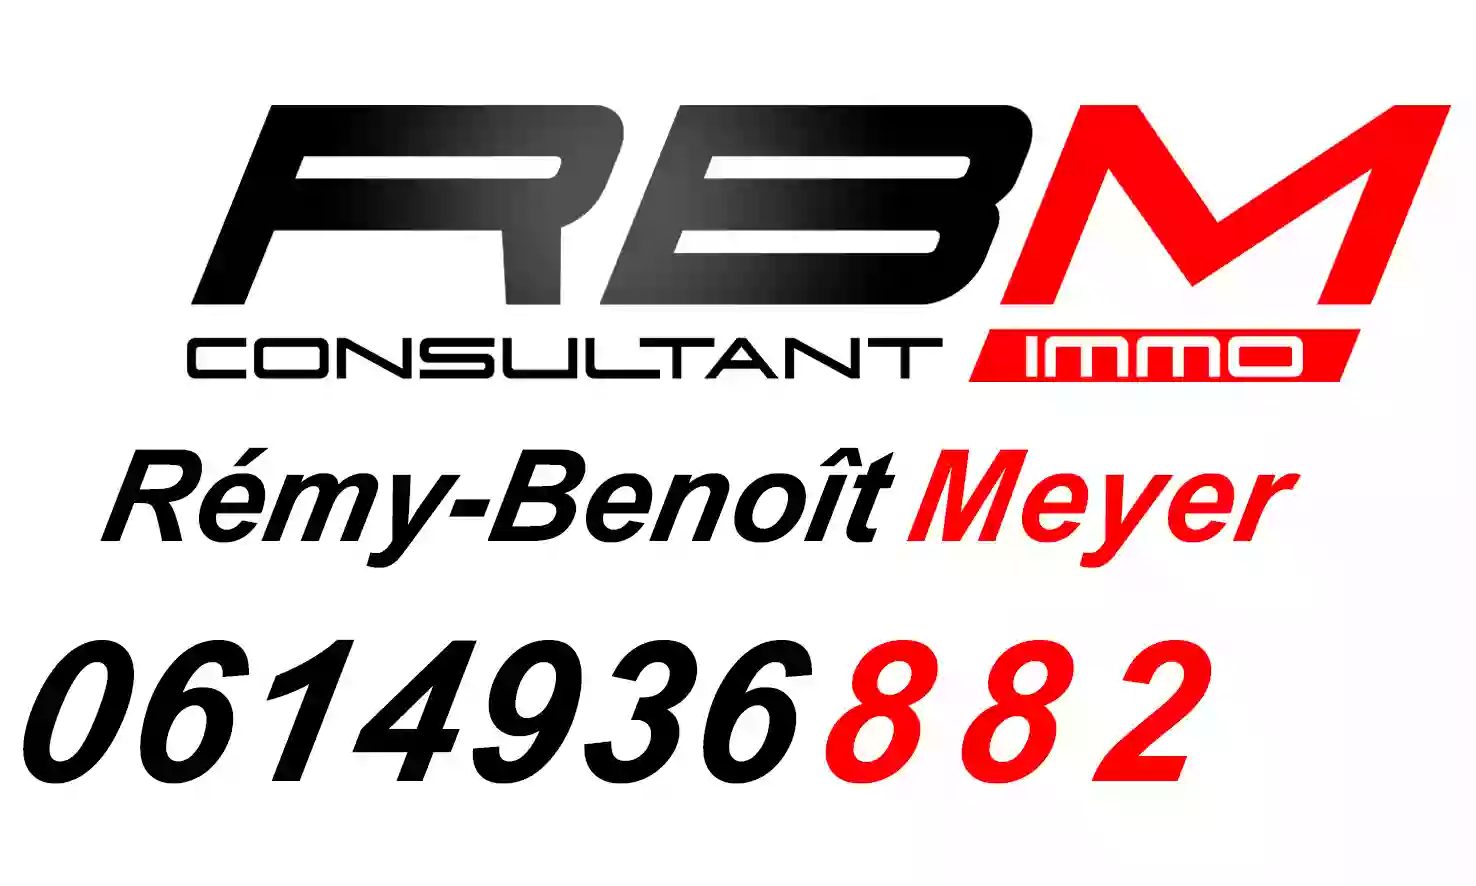 Rémy-Benoît Meyer / Consultant immobilier.